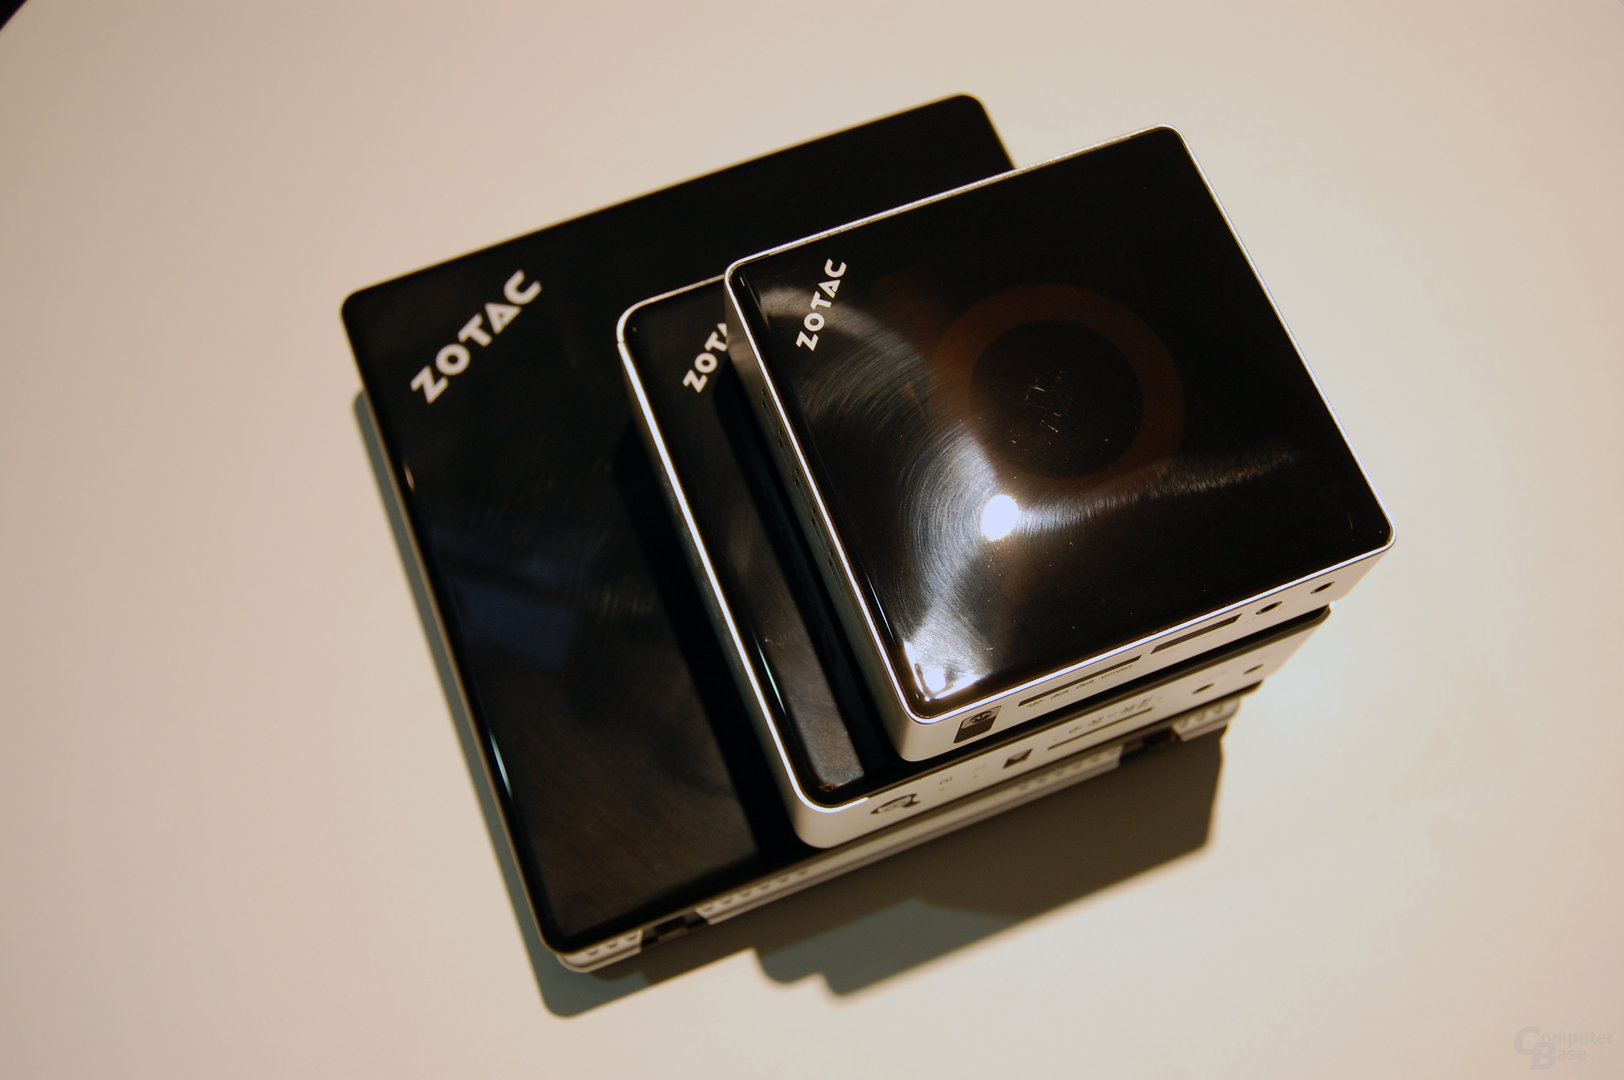 Neue ZBox im Verlgeich zur Zbox nano und Zbox